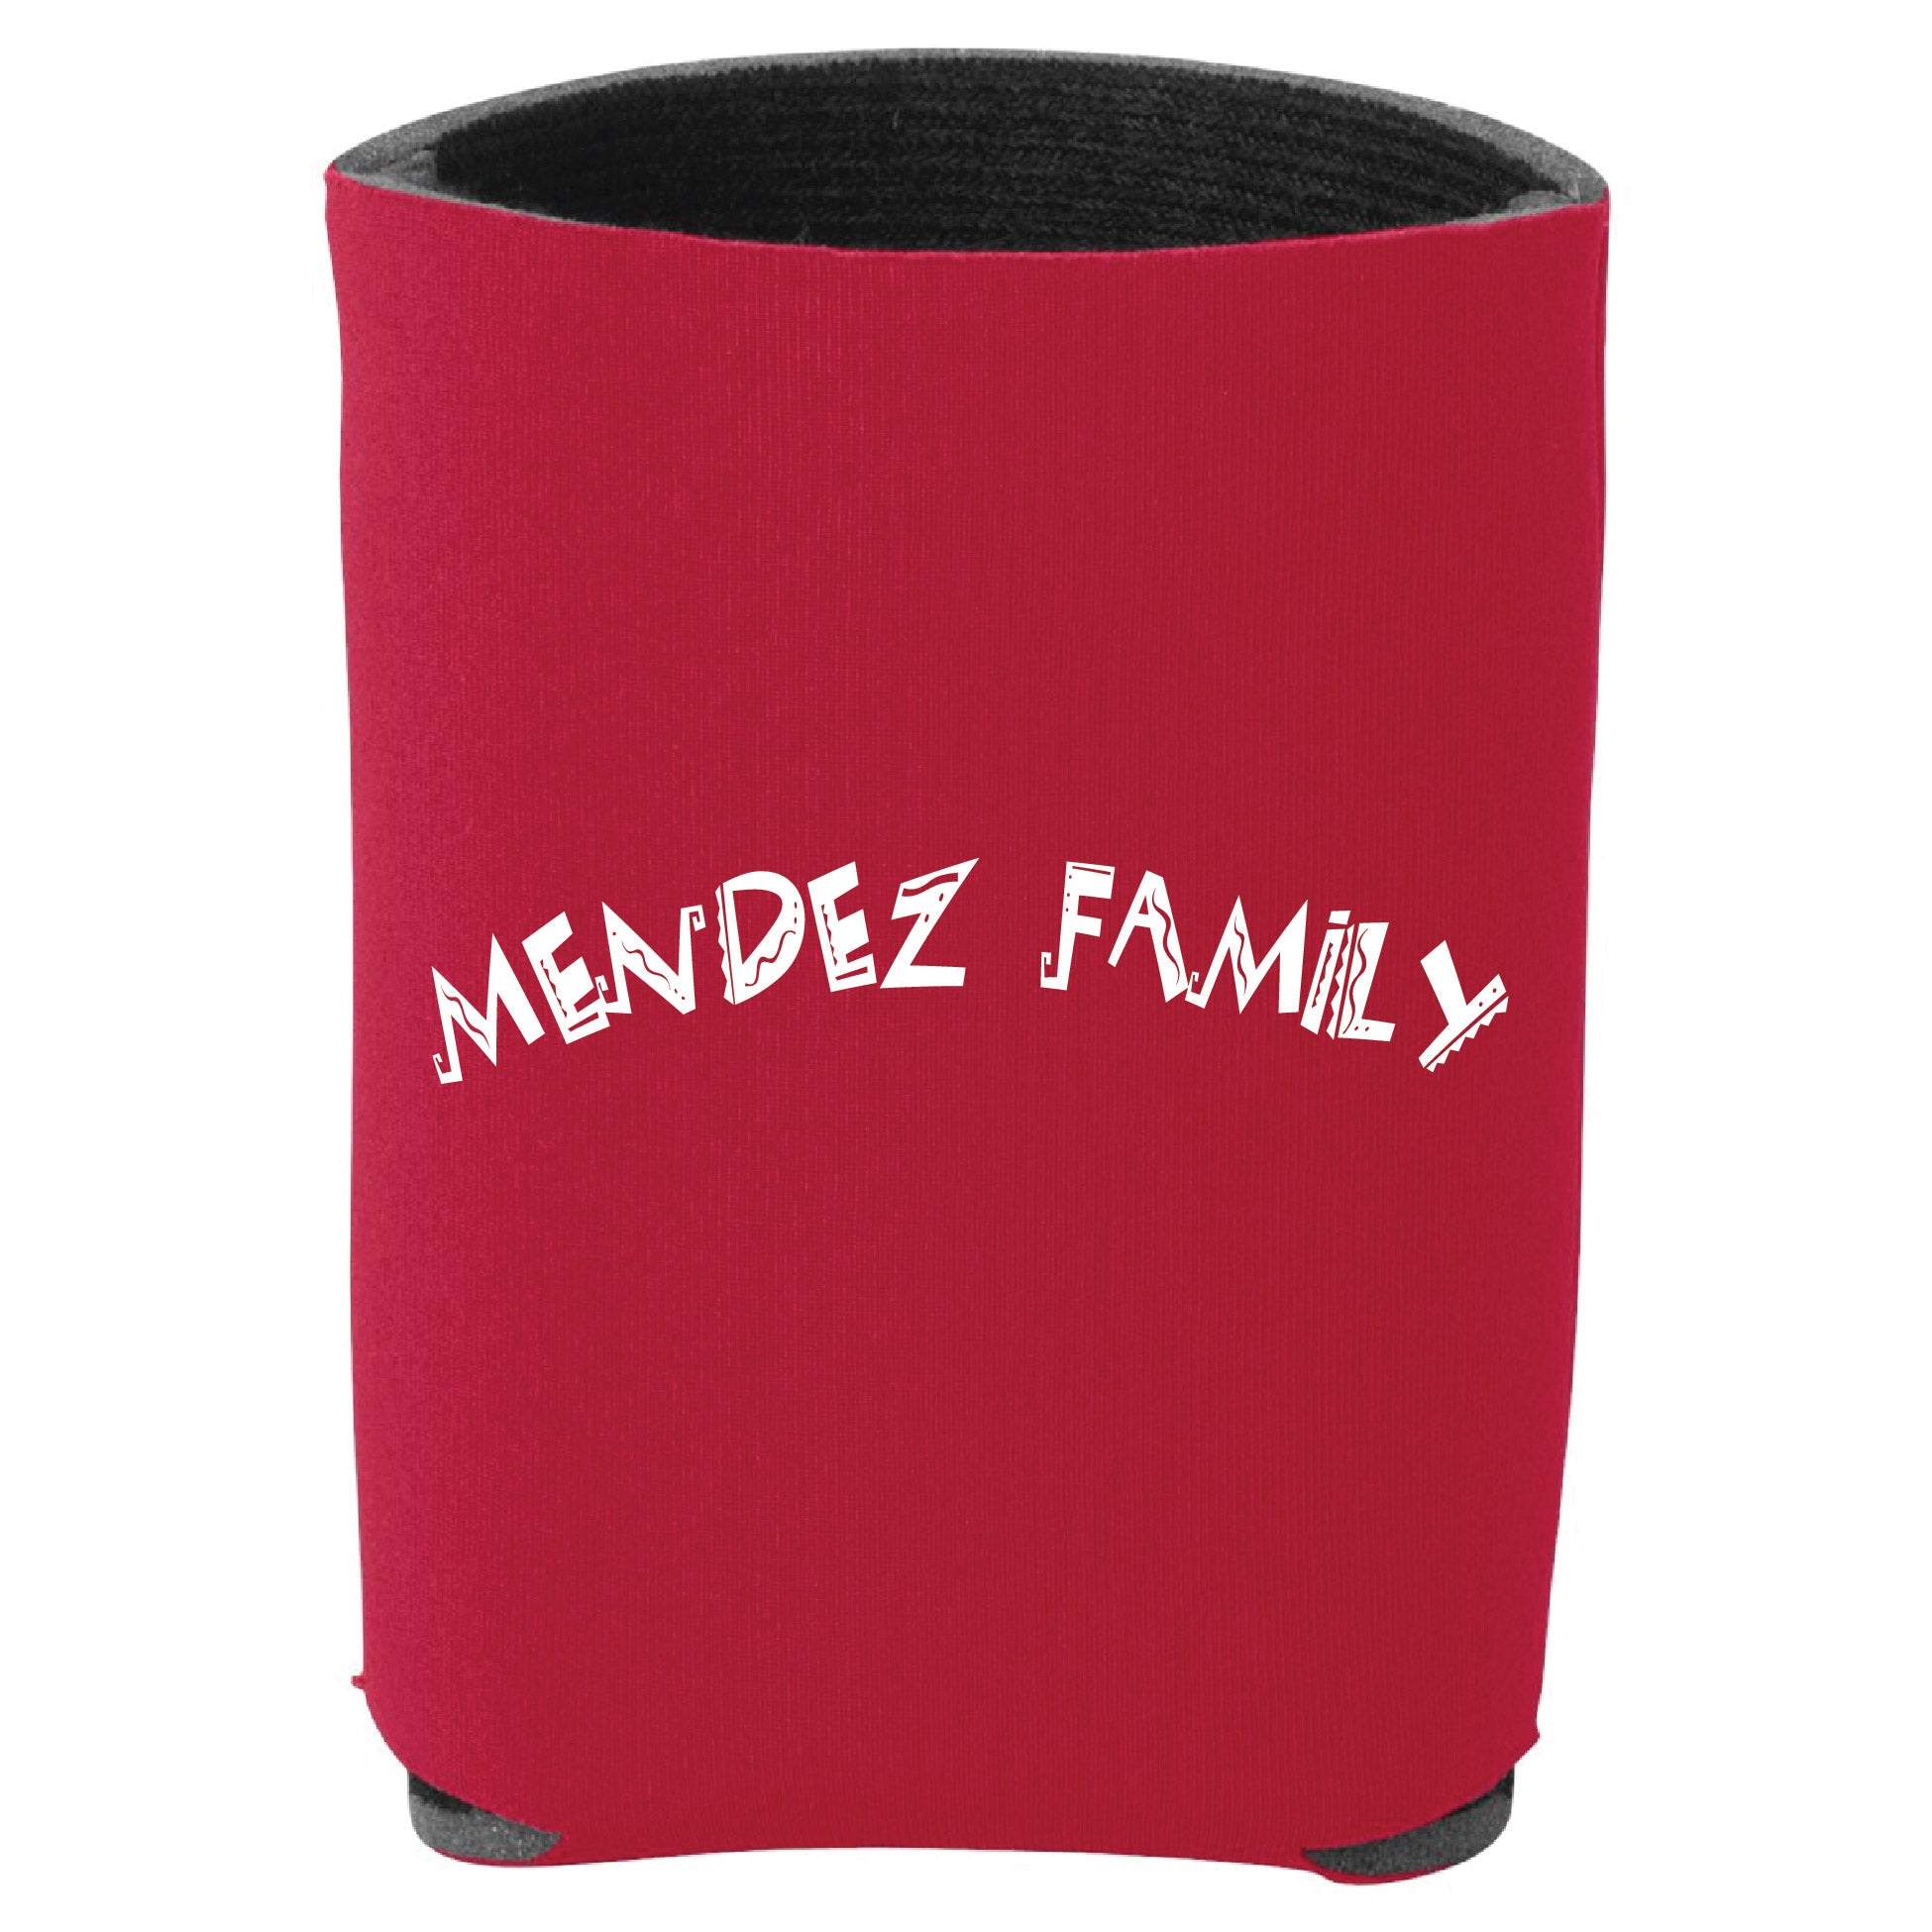 Mendez Family Koozie